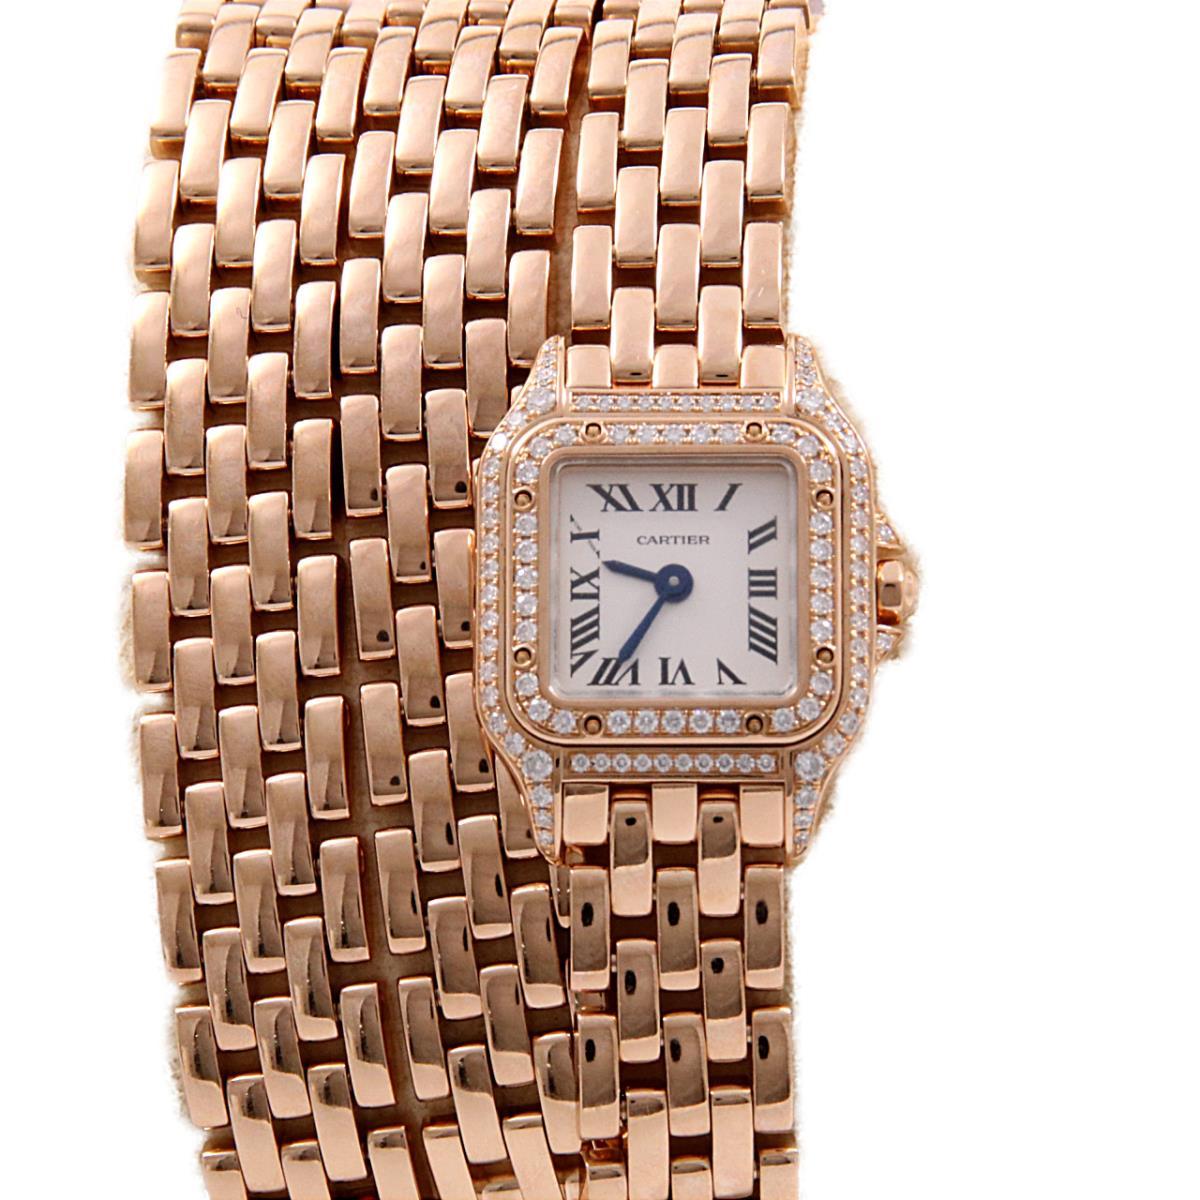 価格帯[400万円以上] カルティエ(Cartier)の腕時計 販売情報一覧 